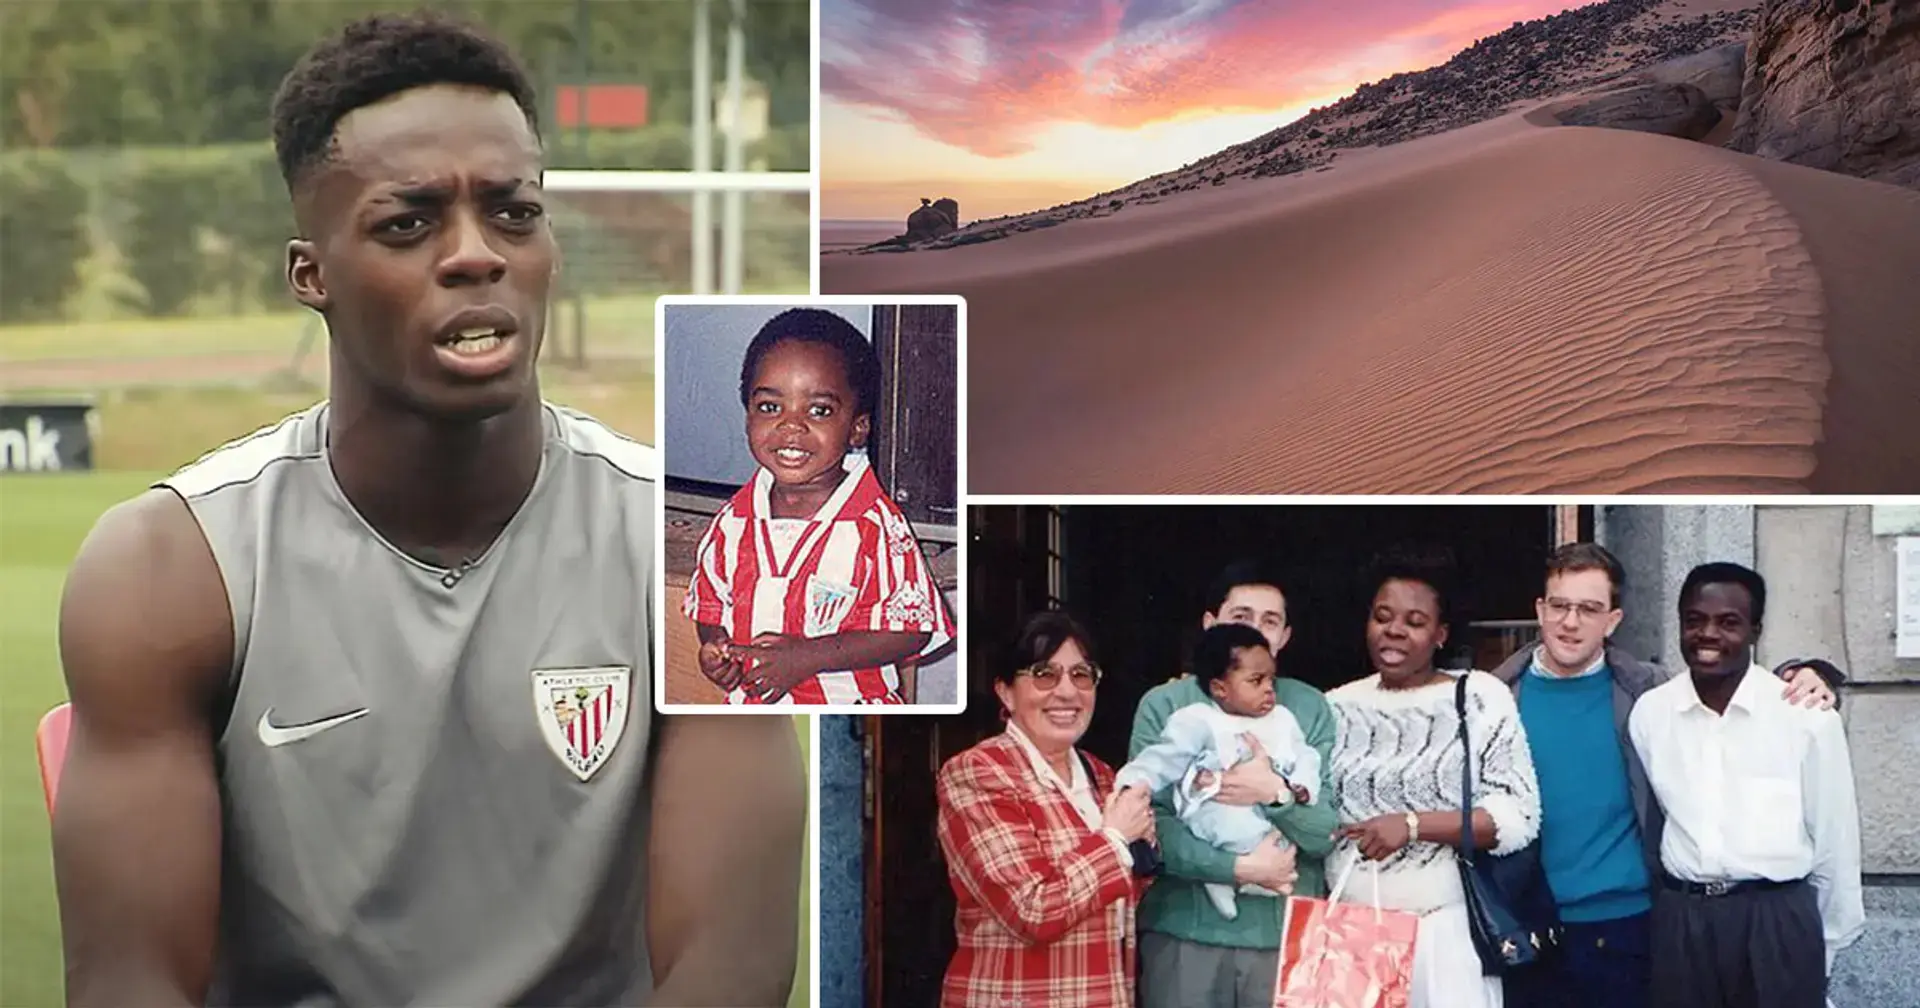 'Mis padres cruzaron el Sáhara descalzos para llegar a España':  Iñaki Williams tiene una increíble historia familiar